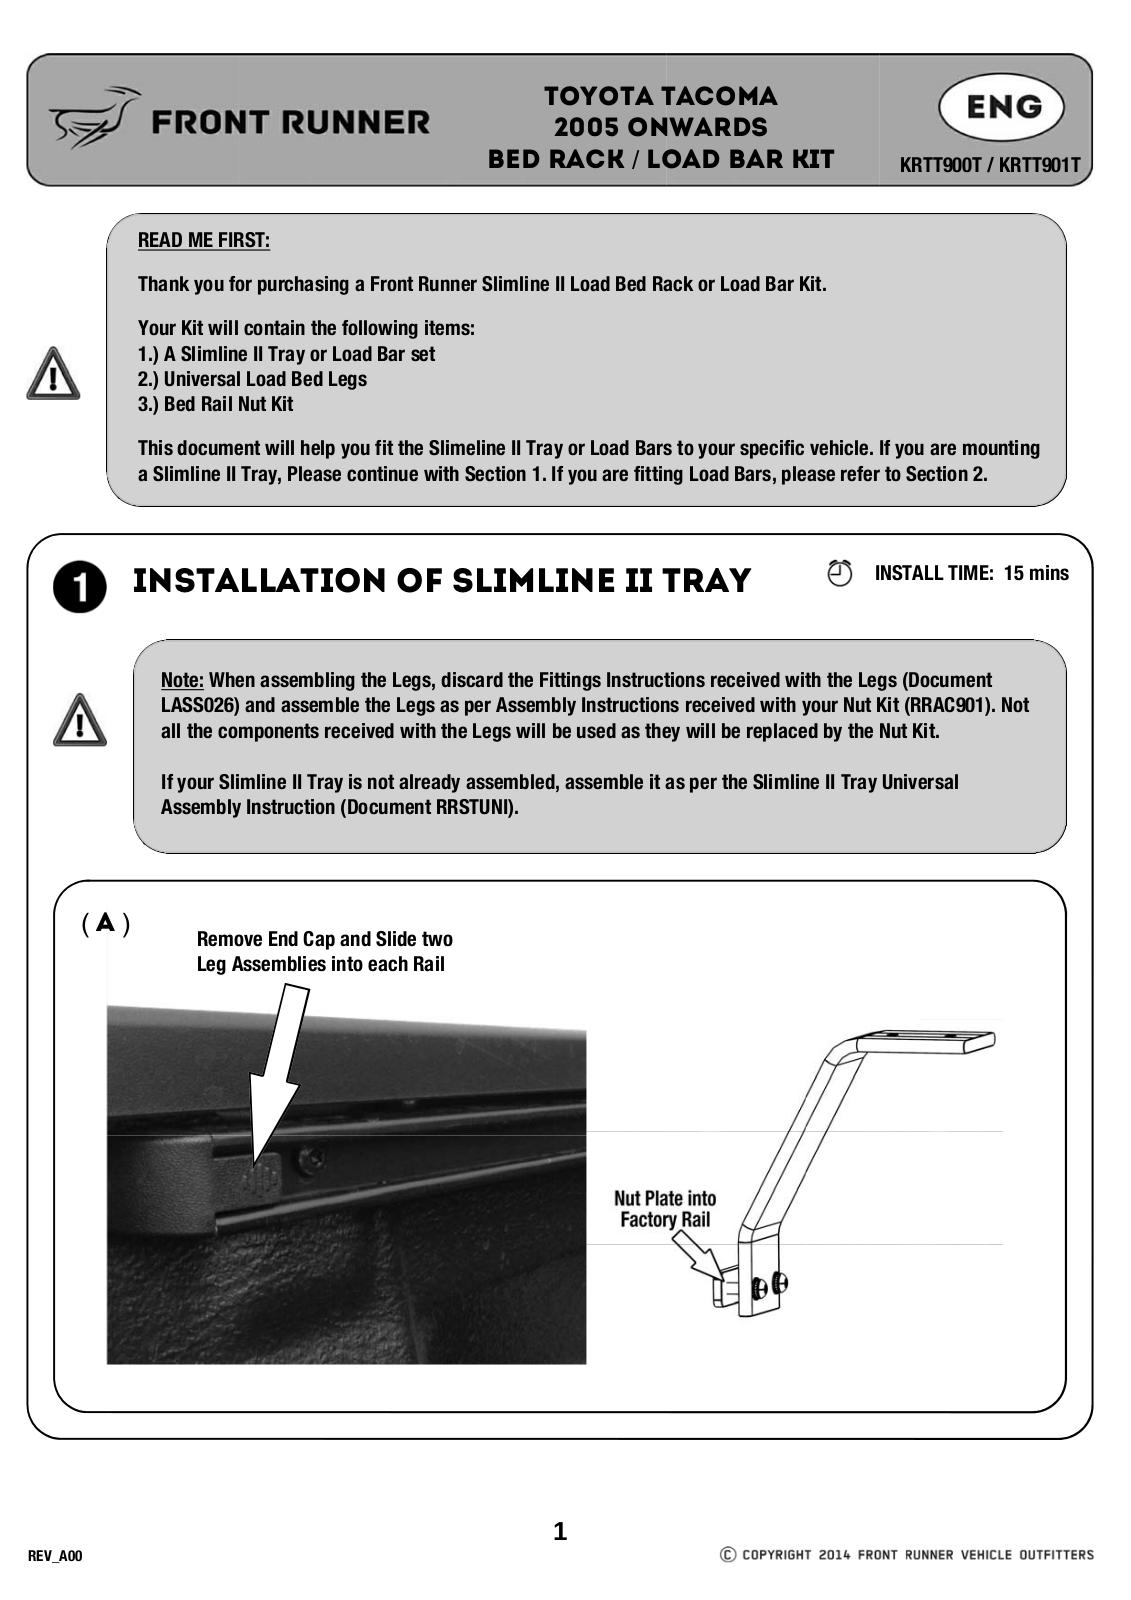 Installation instructions for KRTT900T